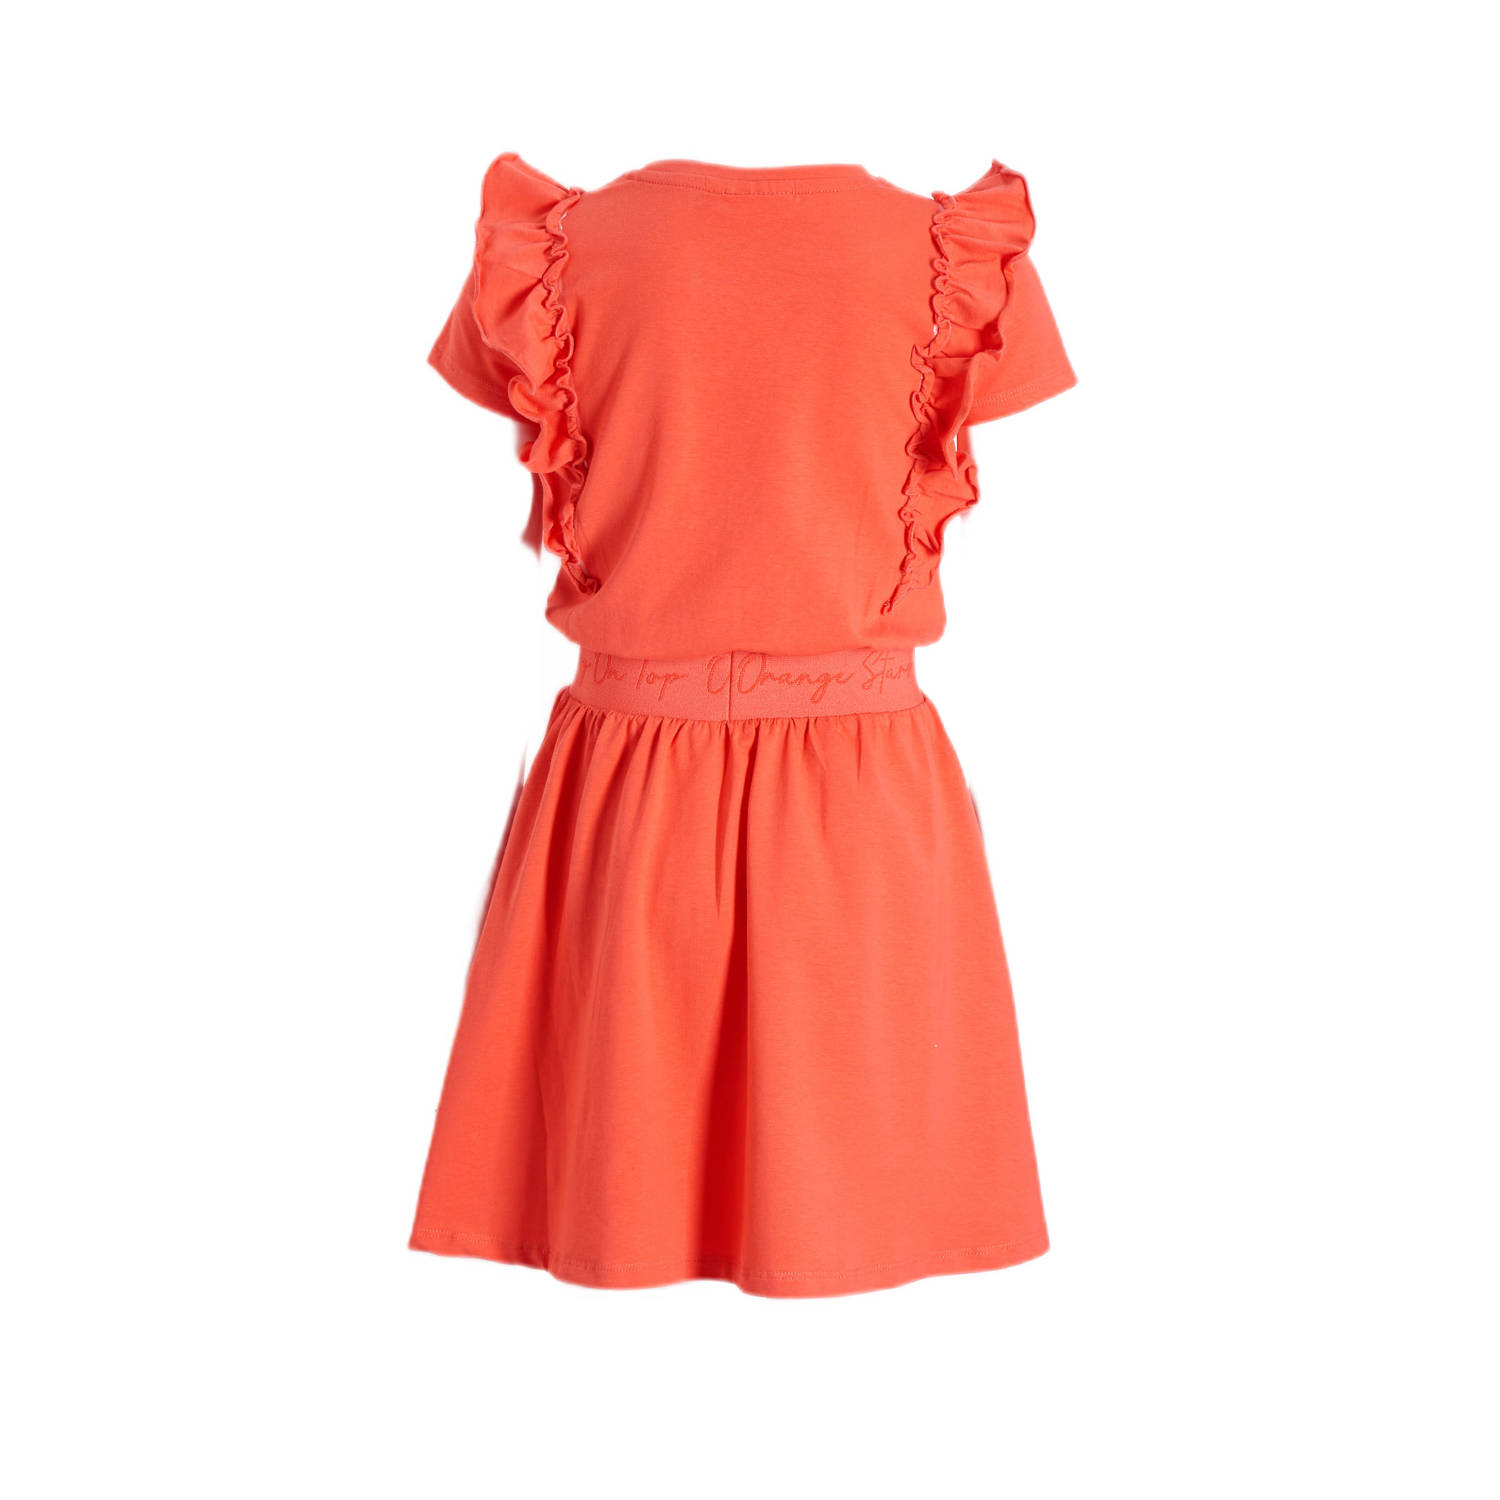 Orange Stars jurk Petronella met tekstopdruk koraal